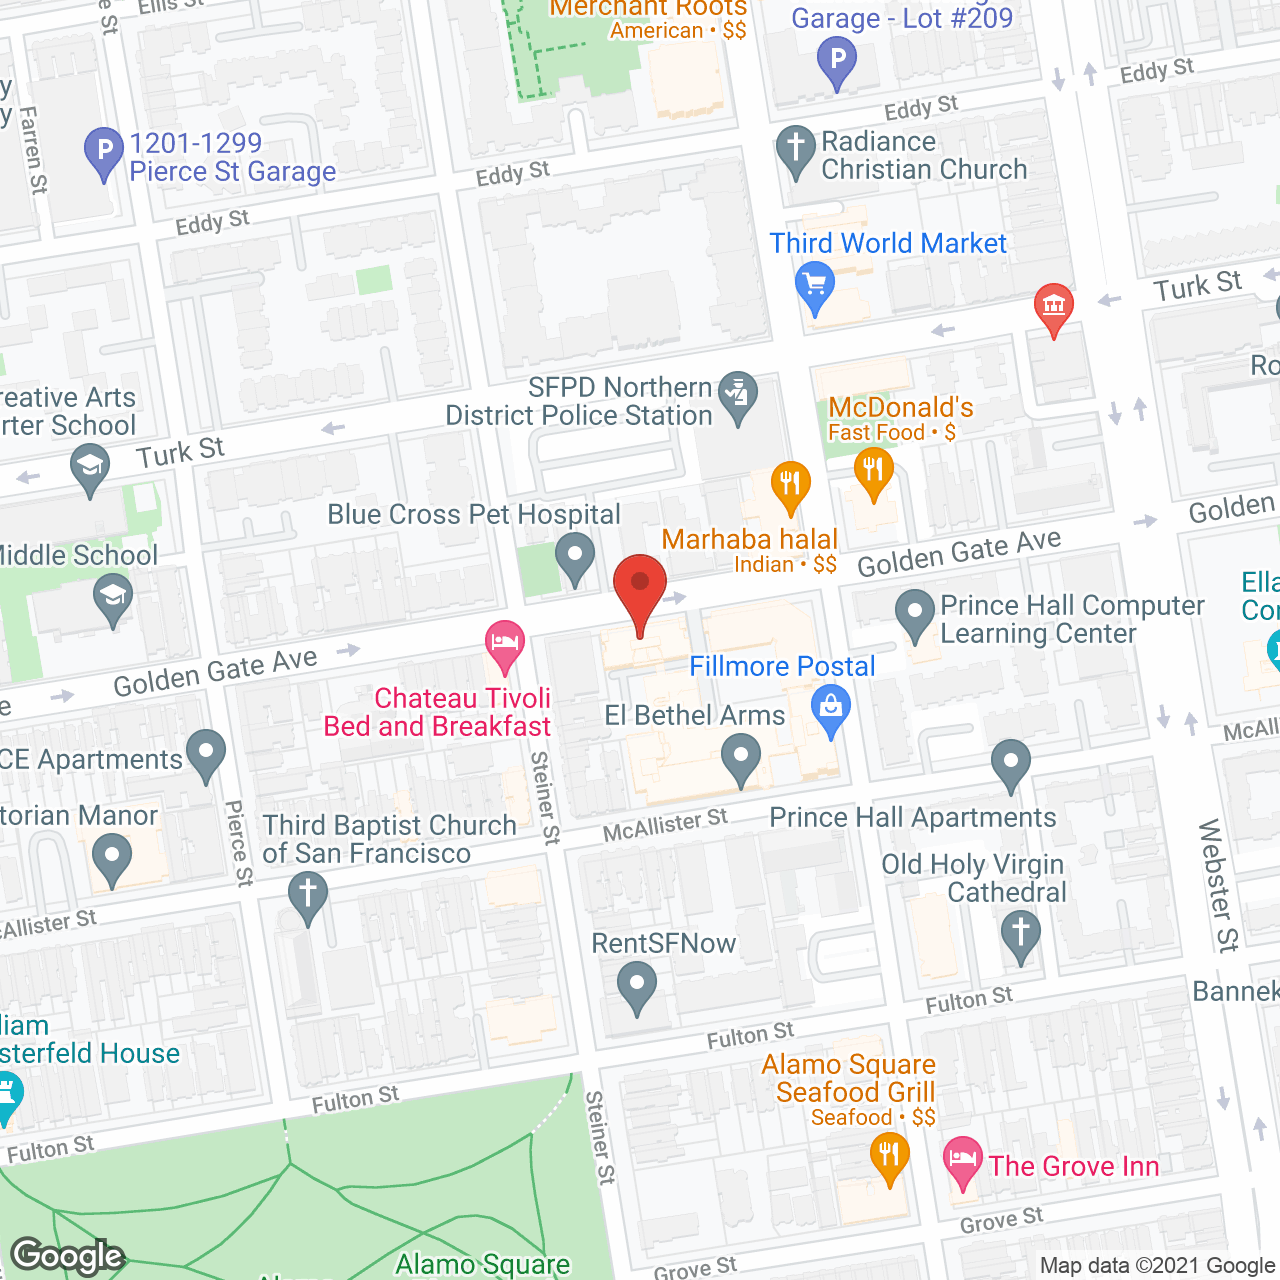 El Bethel Arms Apartments in google map